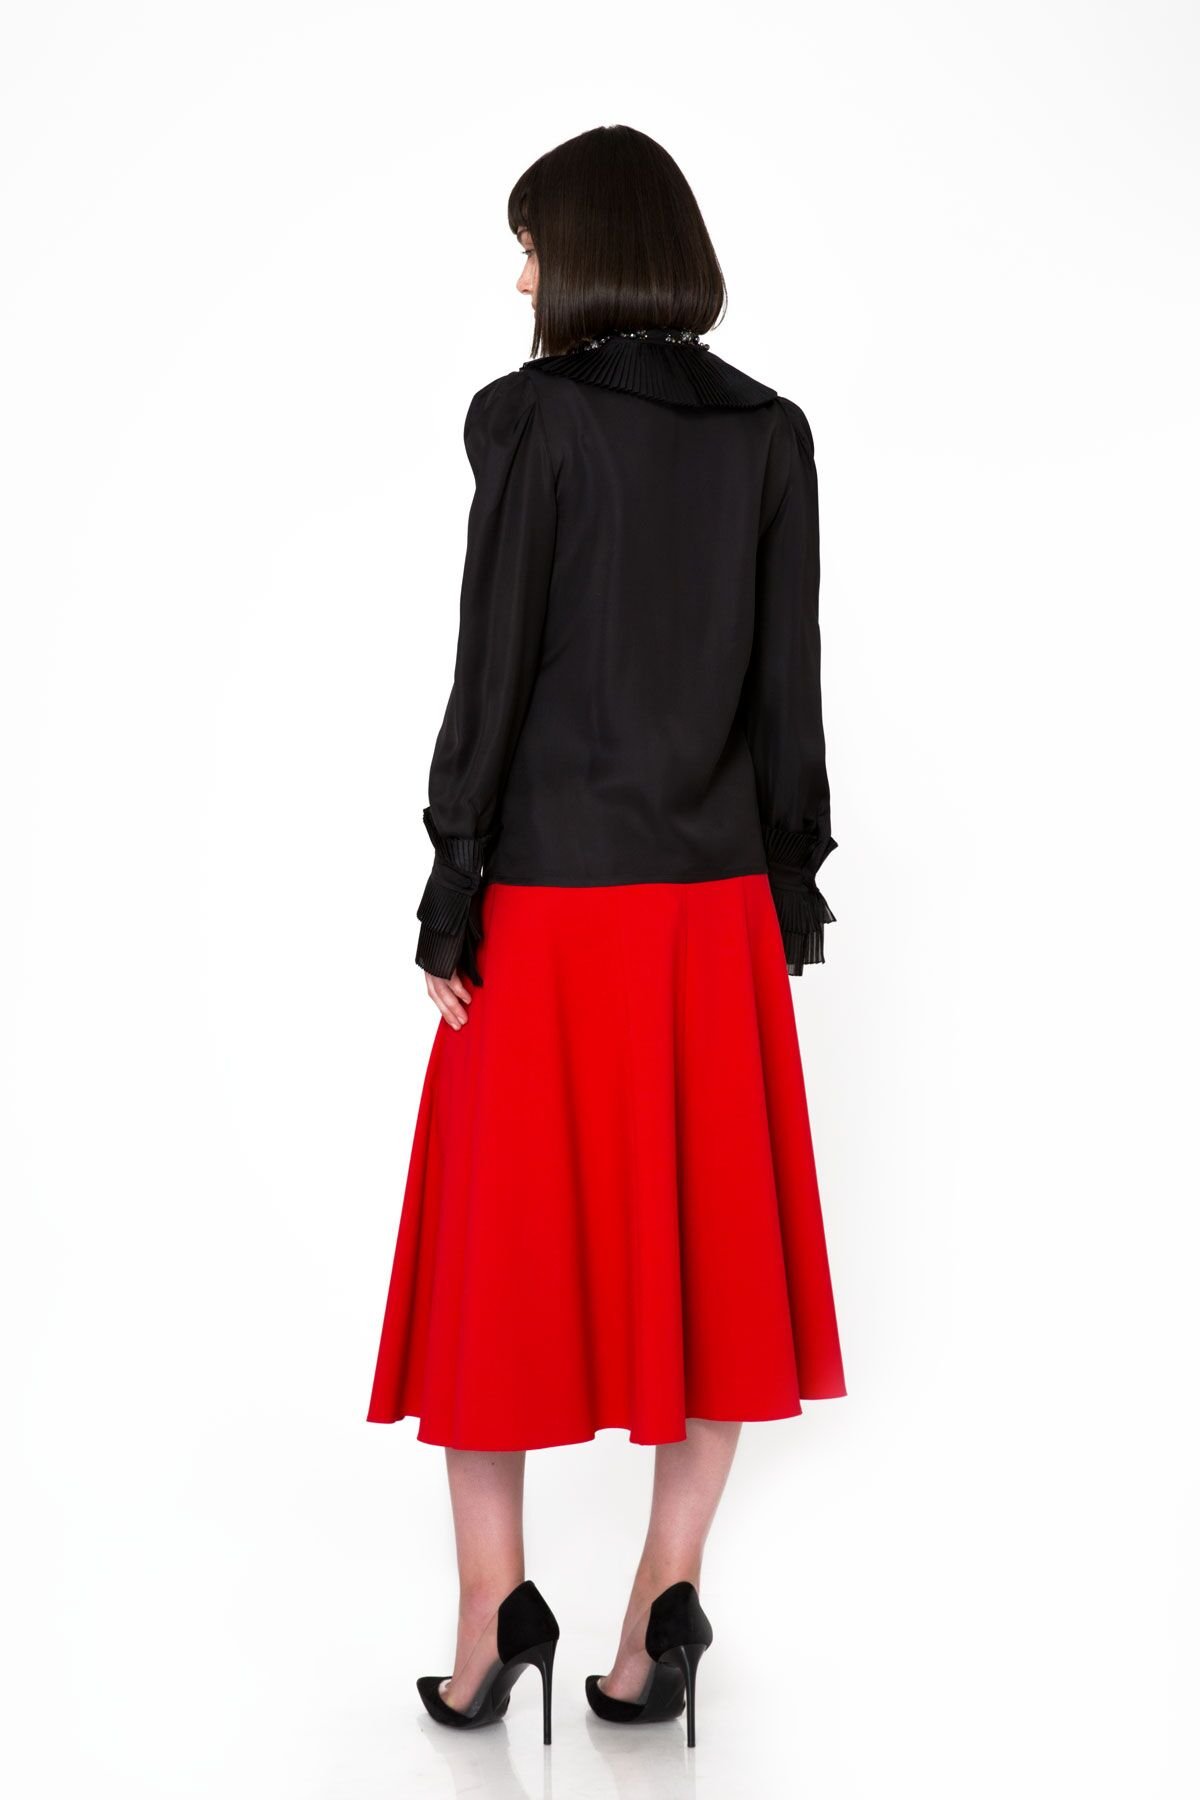 Sliced Cut Midi Length Red Skirt